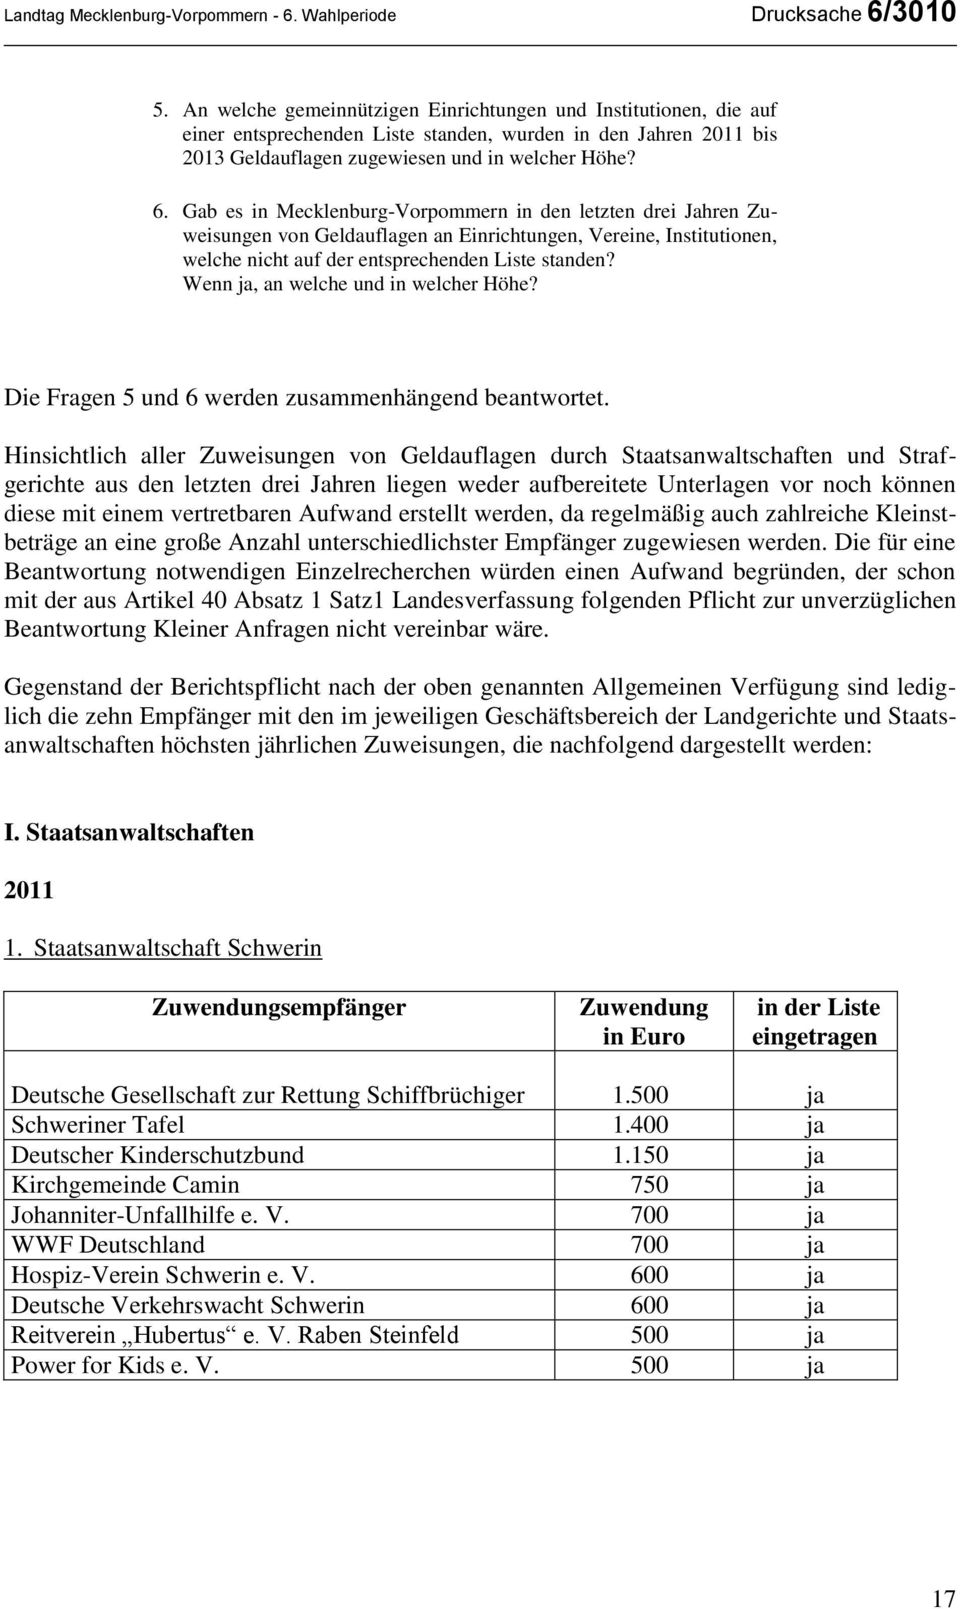 Gab es in Mecklenburg-Vorpommern in den letzten drei Jahren Zuweisungen von Geldauflagen an Einrichtungen, Vereine, Institutionen, welche nicht auf der entsprechenden Liste standen?